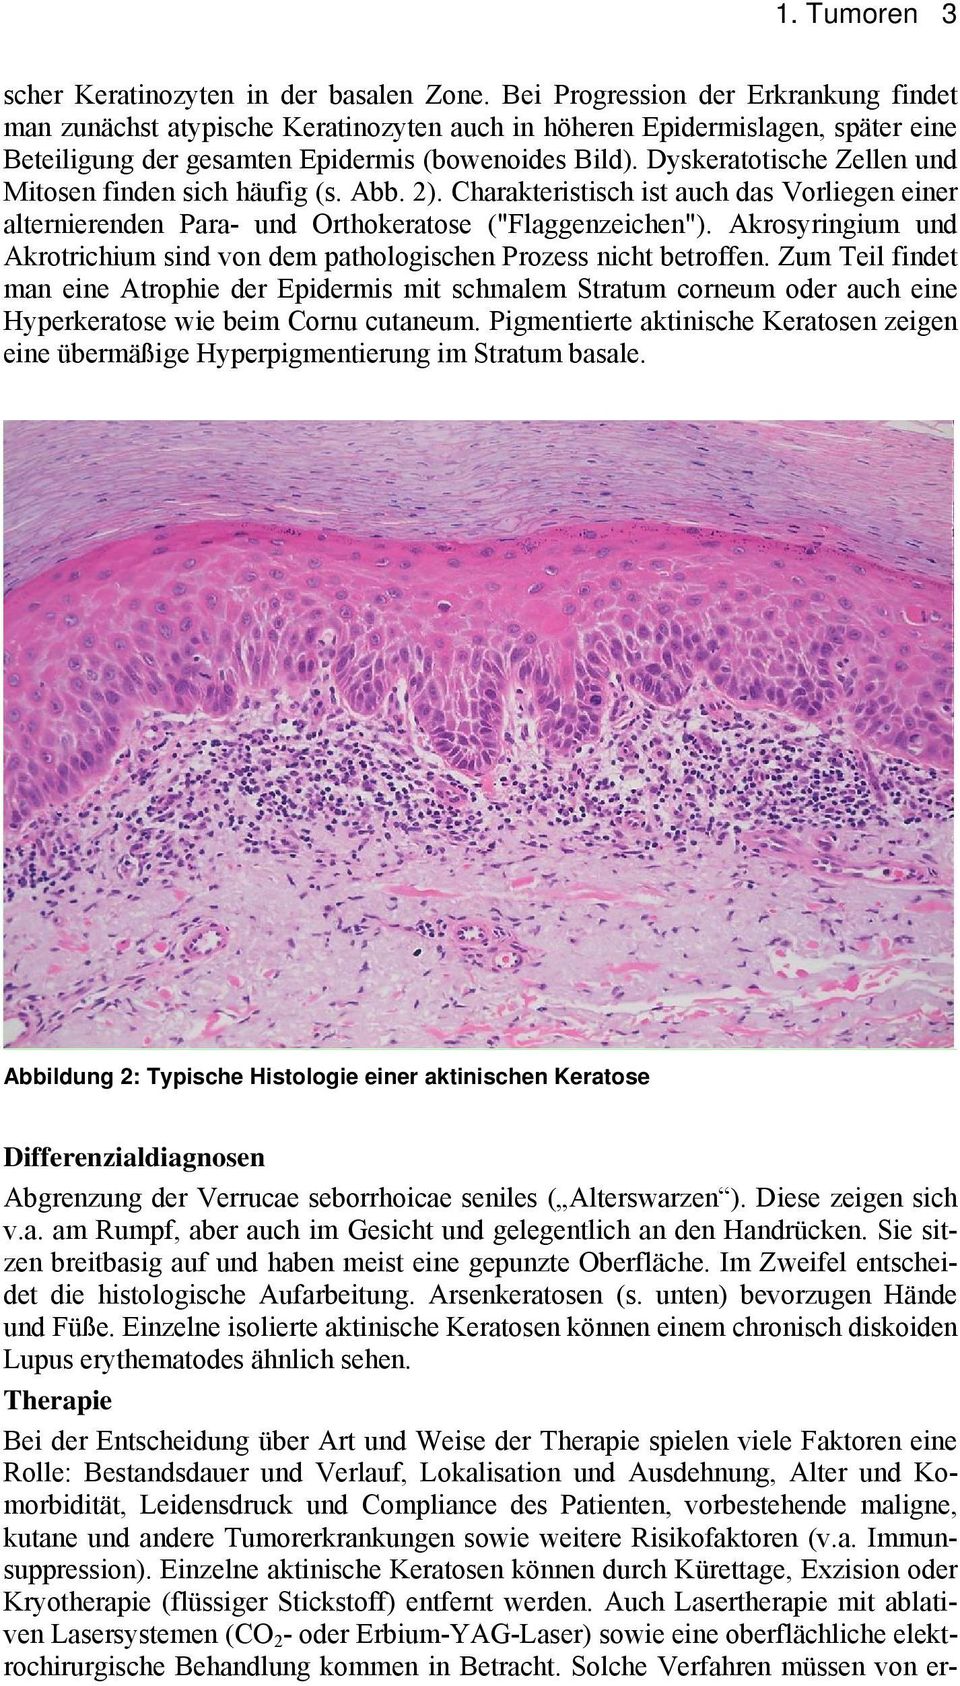 Dyskeratotische Zellen und Mitosen finden sich häufig (s. Abb. 2). Charakteristisch ist auch das Vorliegen einer alternierenden Para- und Orthokeratose ("Flaggenzeichen").